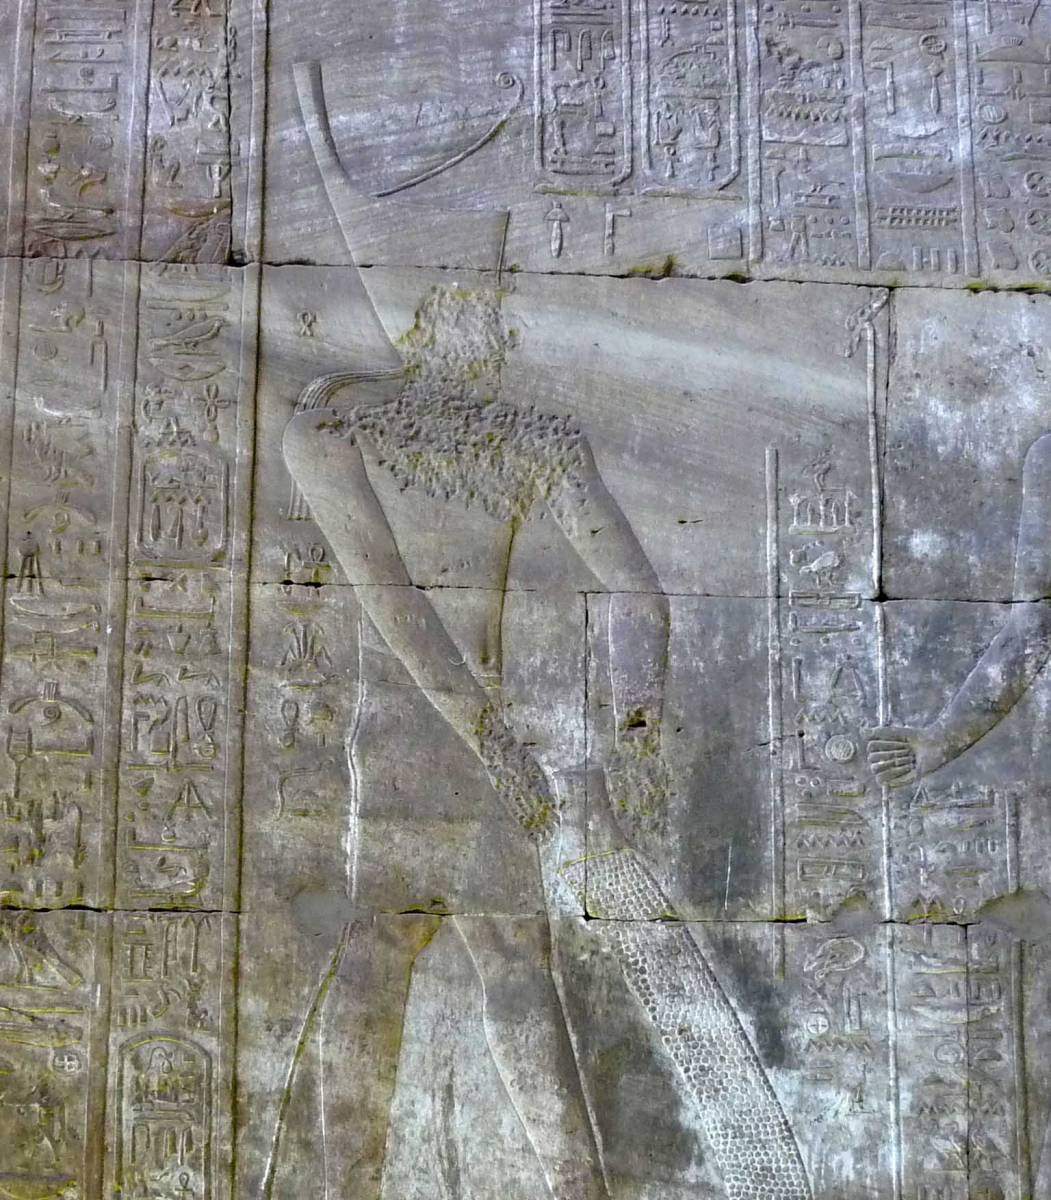 במצרים העתיקה השתמשו ככל הנראה בחומר סיכה שהקל על שינוע פסלים. קרדיט: ויקימדיה